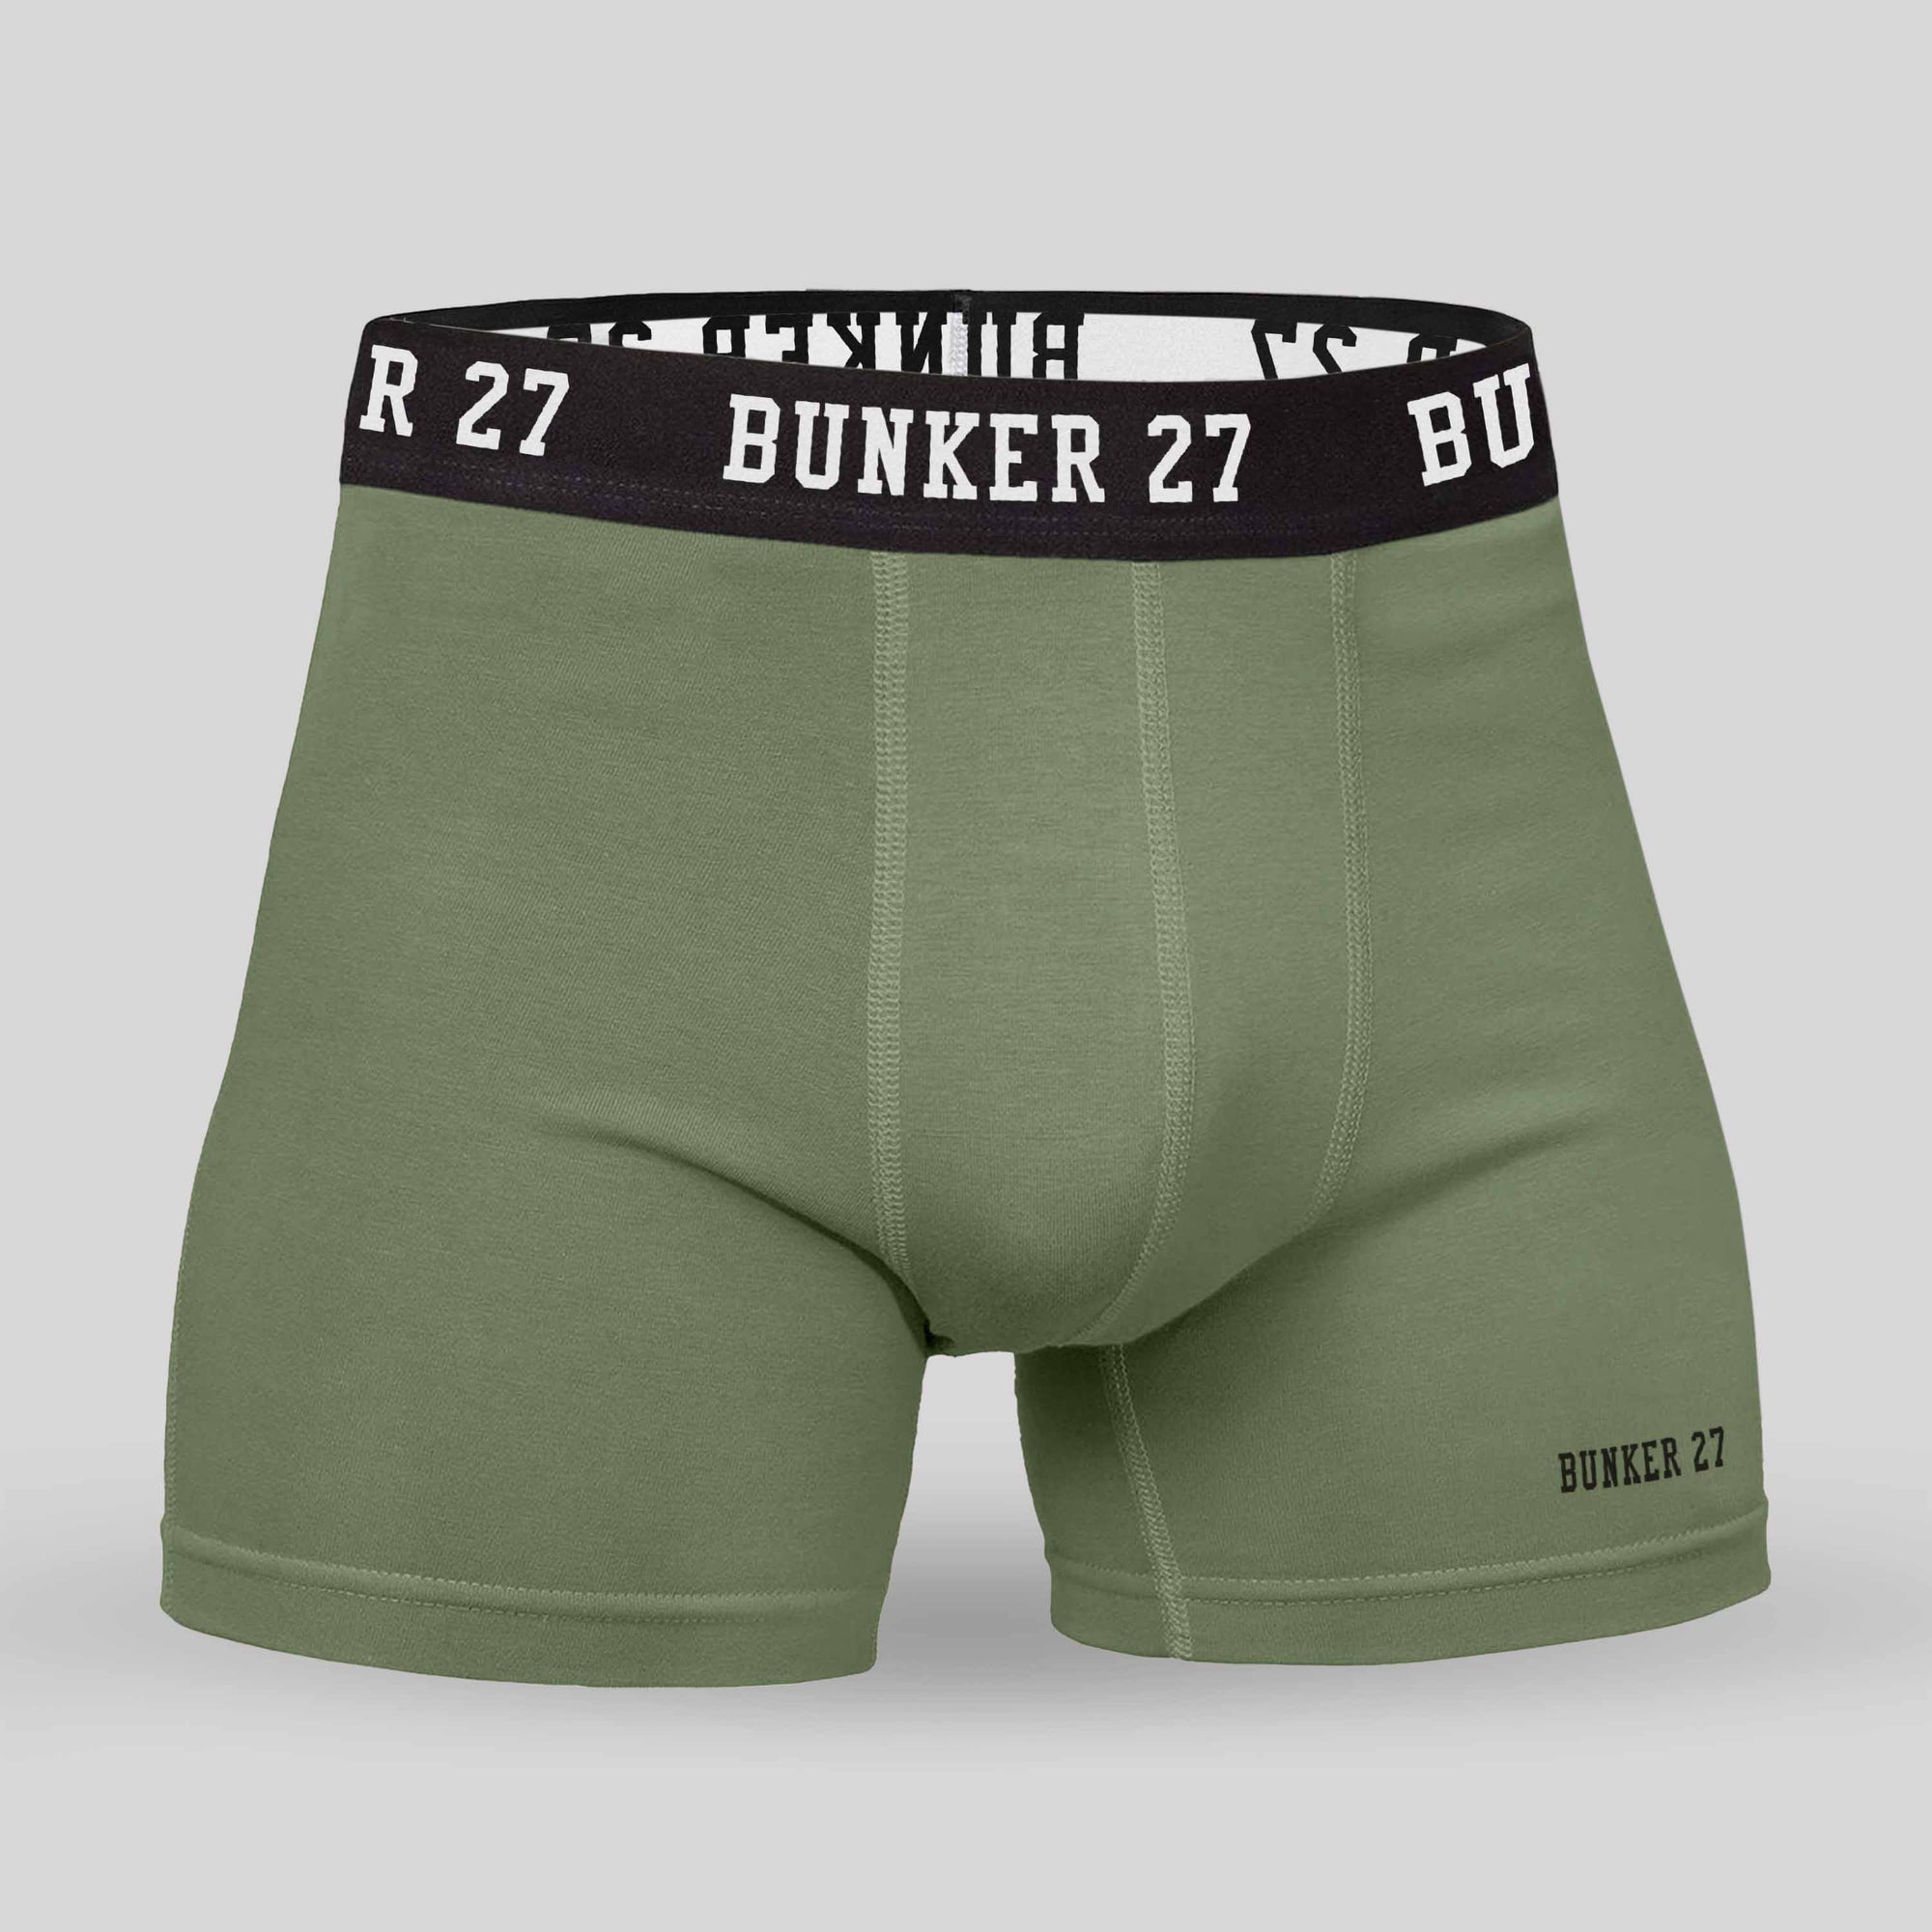 Mens 3 Pack Boxer Brief Underwear